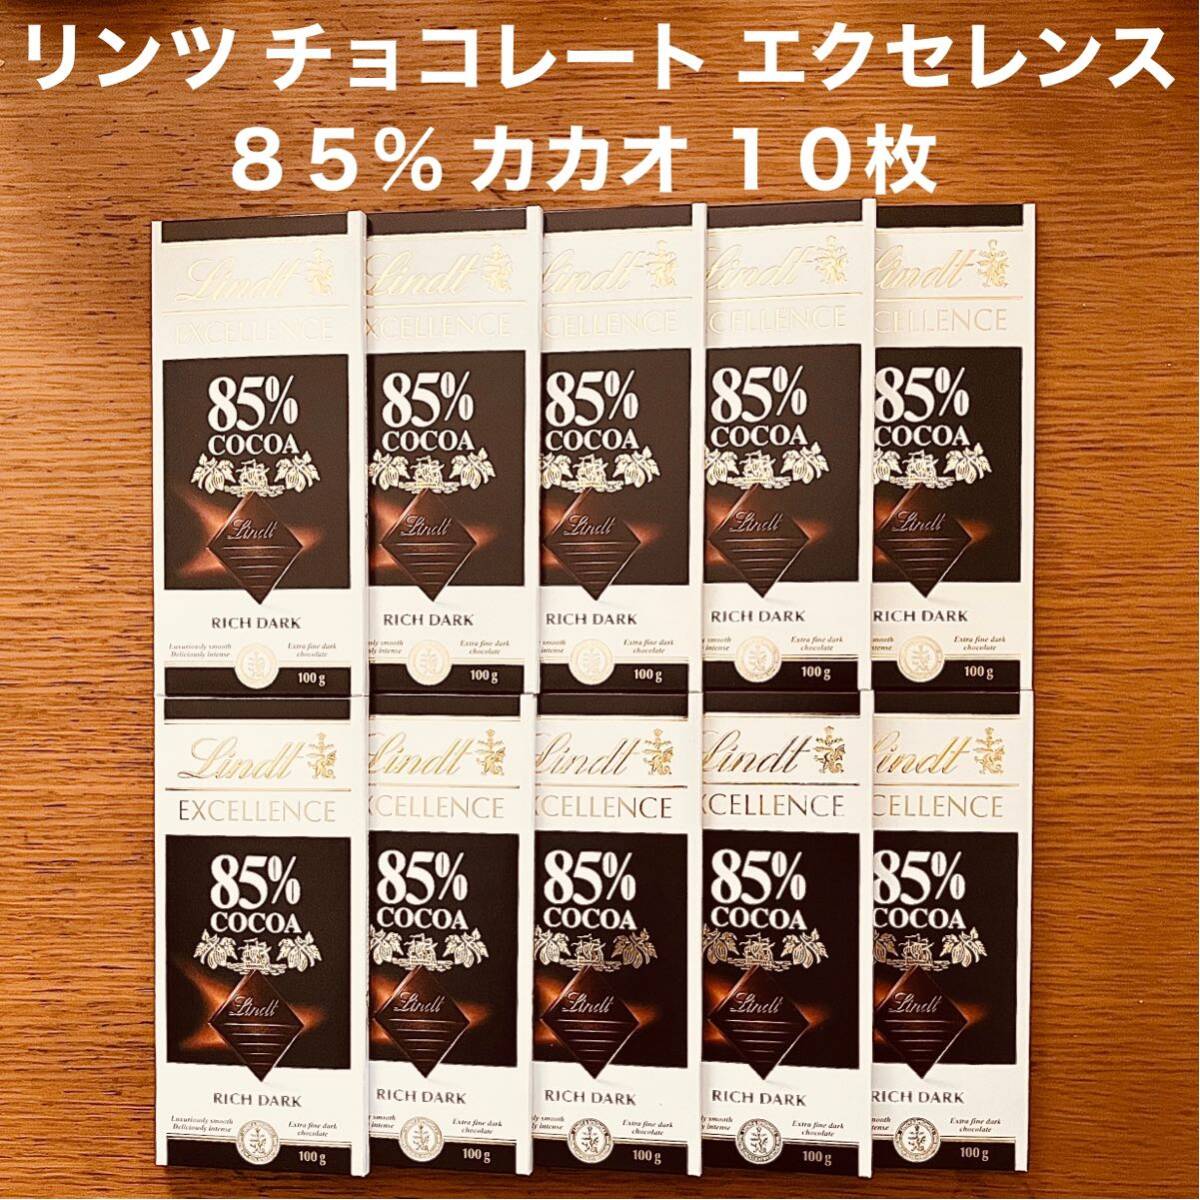 リンツ チョコレート エクセレンス 85% ダーク カカオ 10枚 スイスの画像1